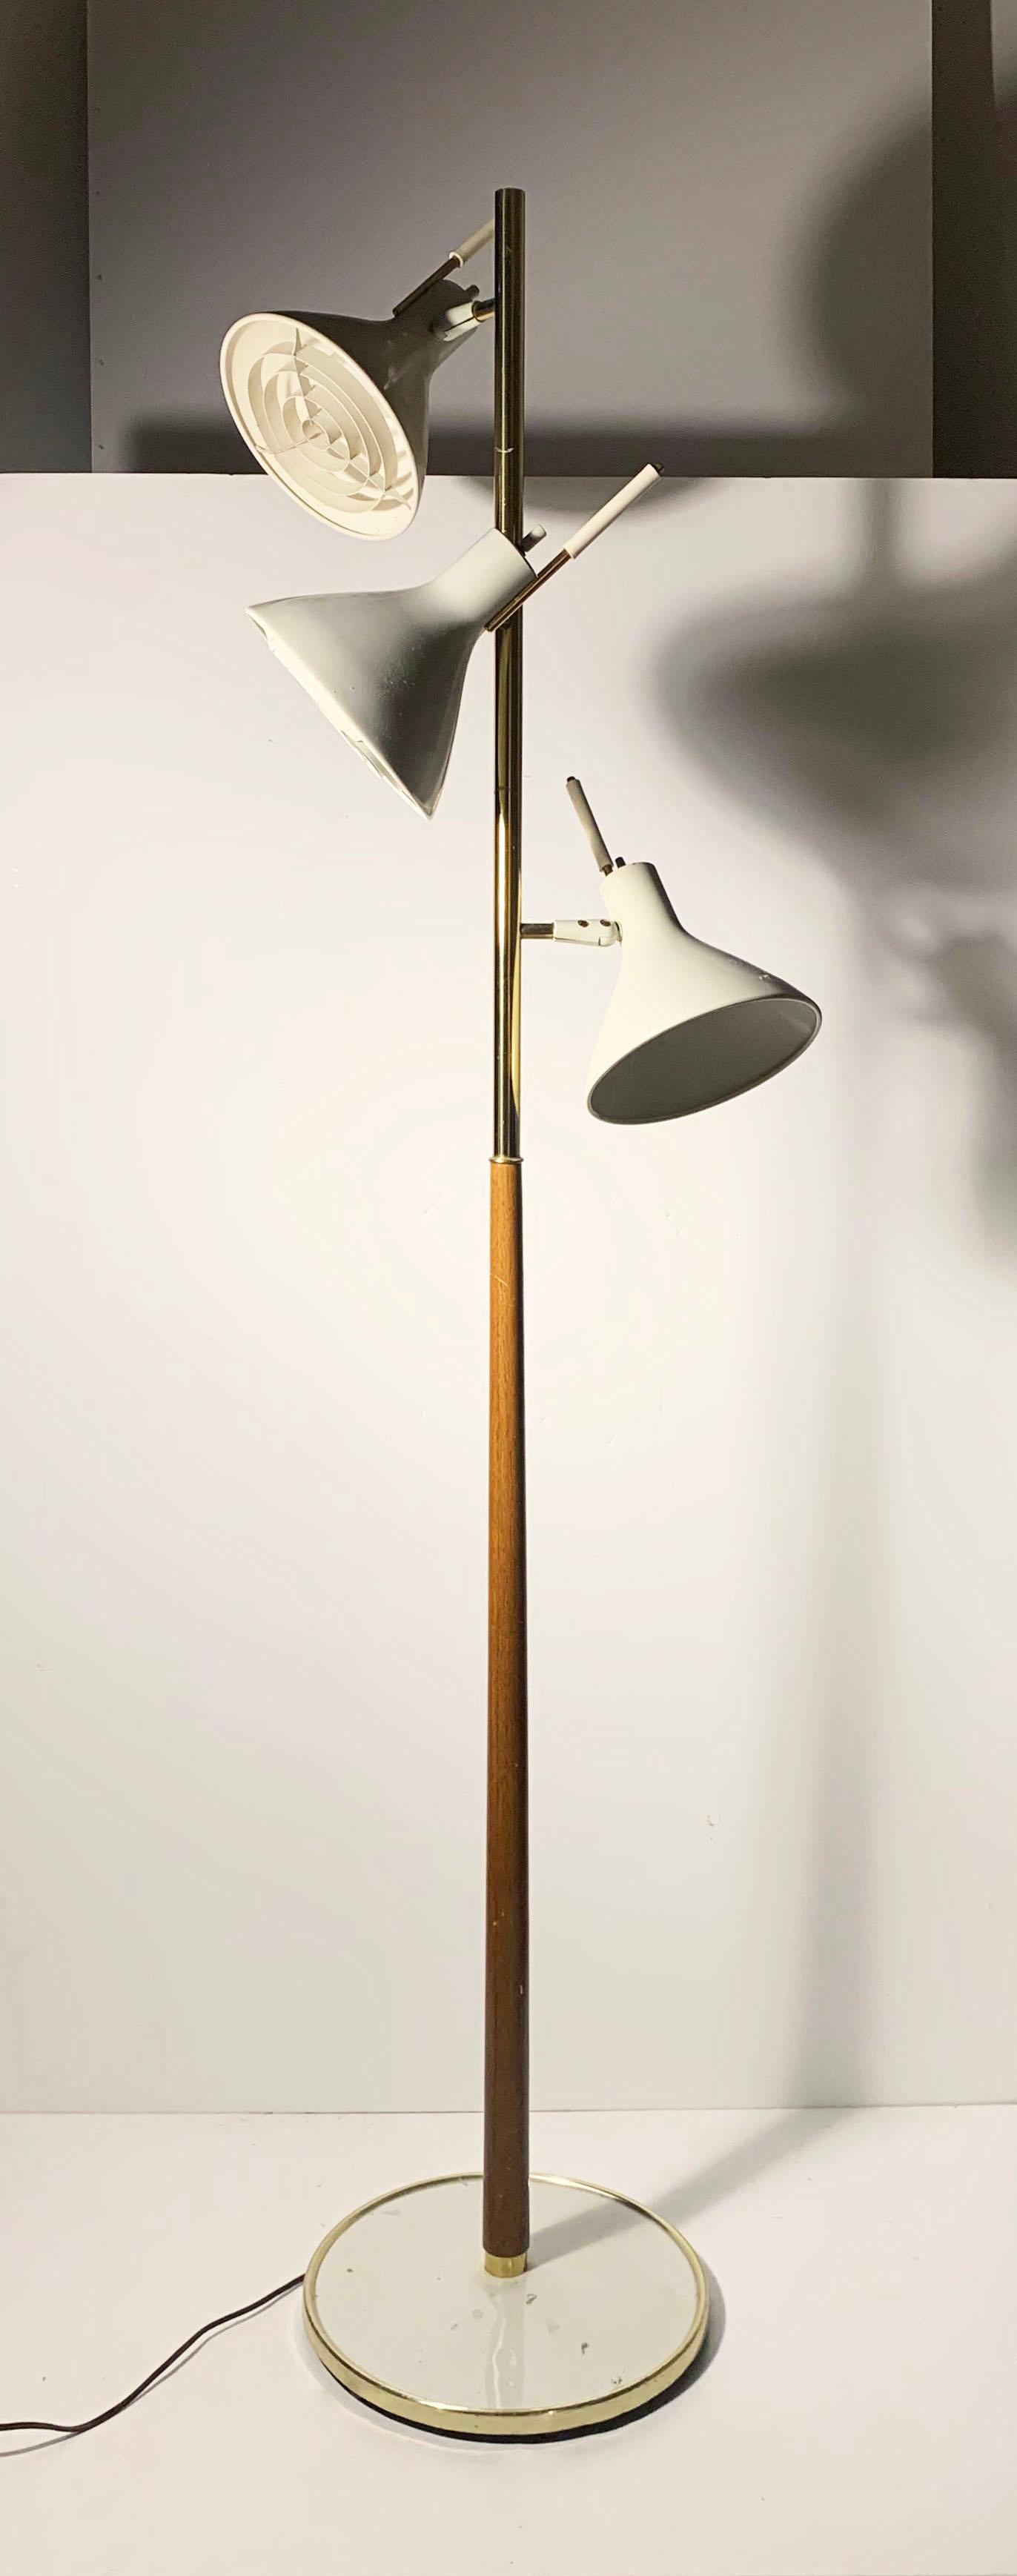 Vintage Lightolier articulating floor lamp

Signed on underside

Base is 13